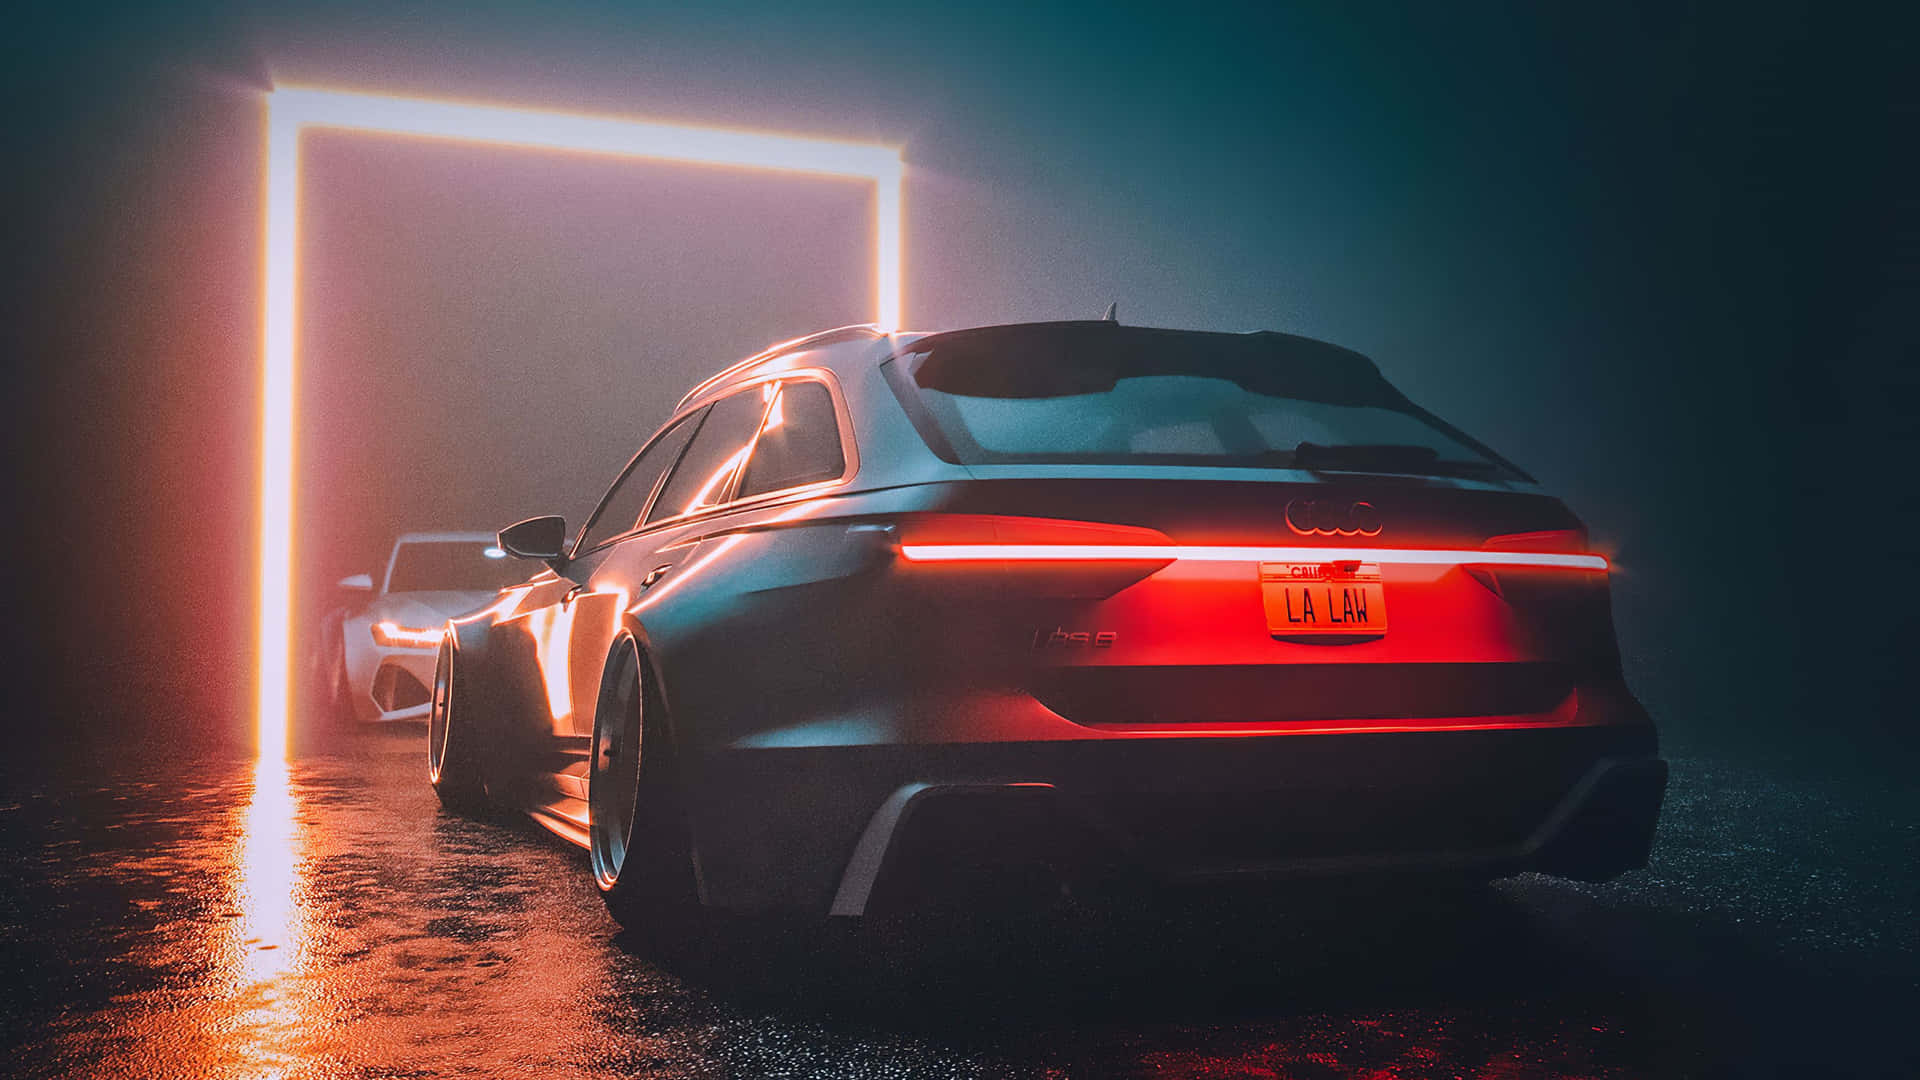 Caption: Sleek and Stylish Audi on the Road